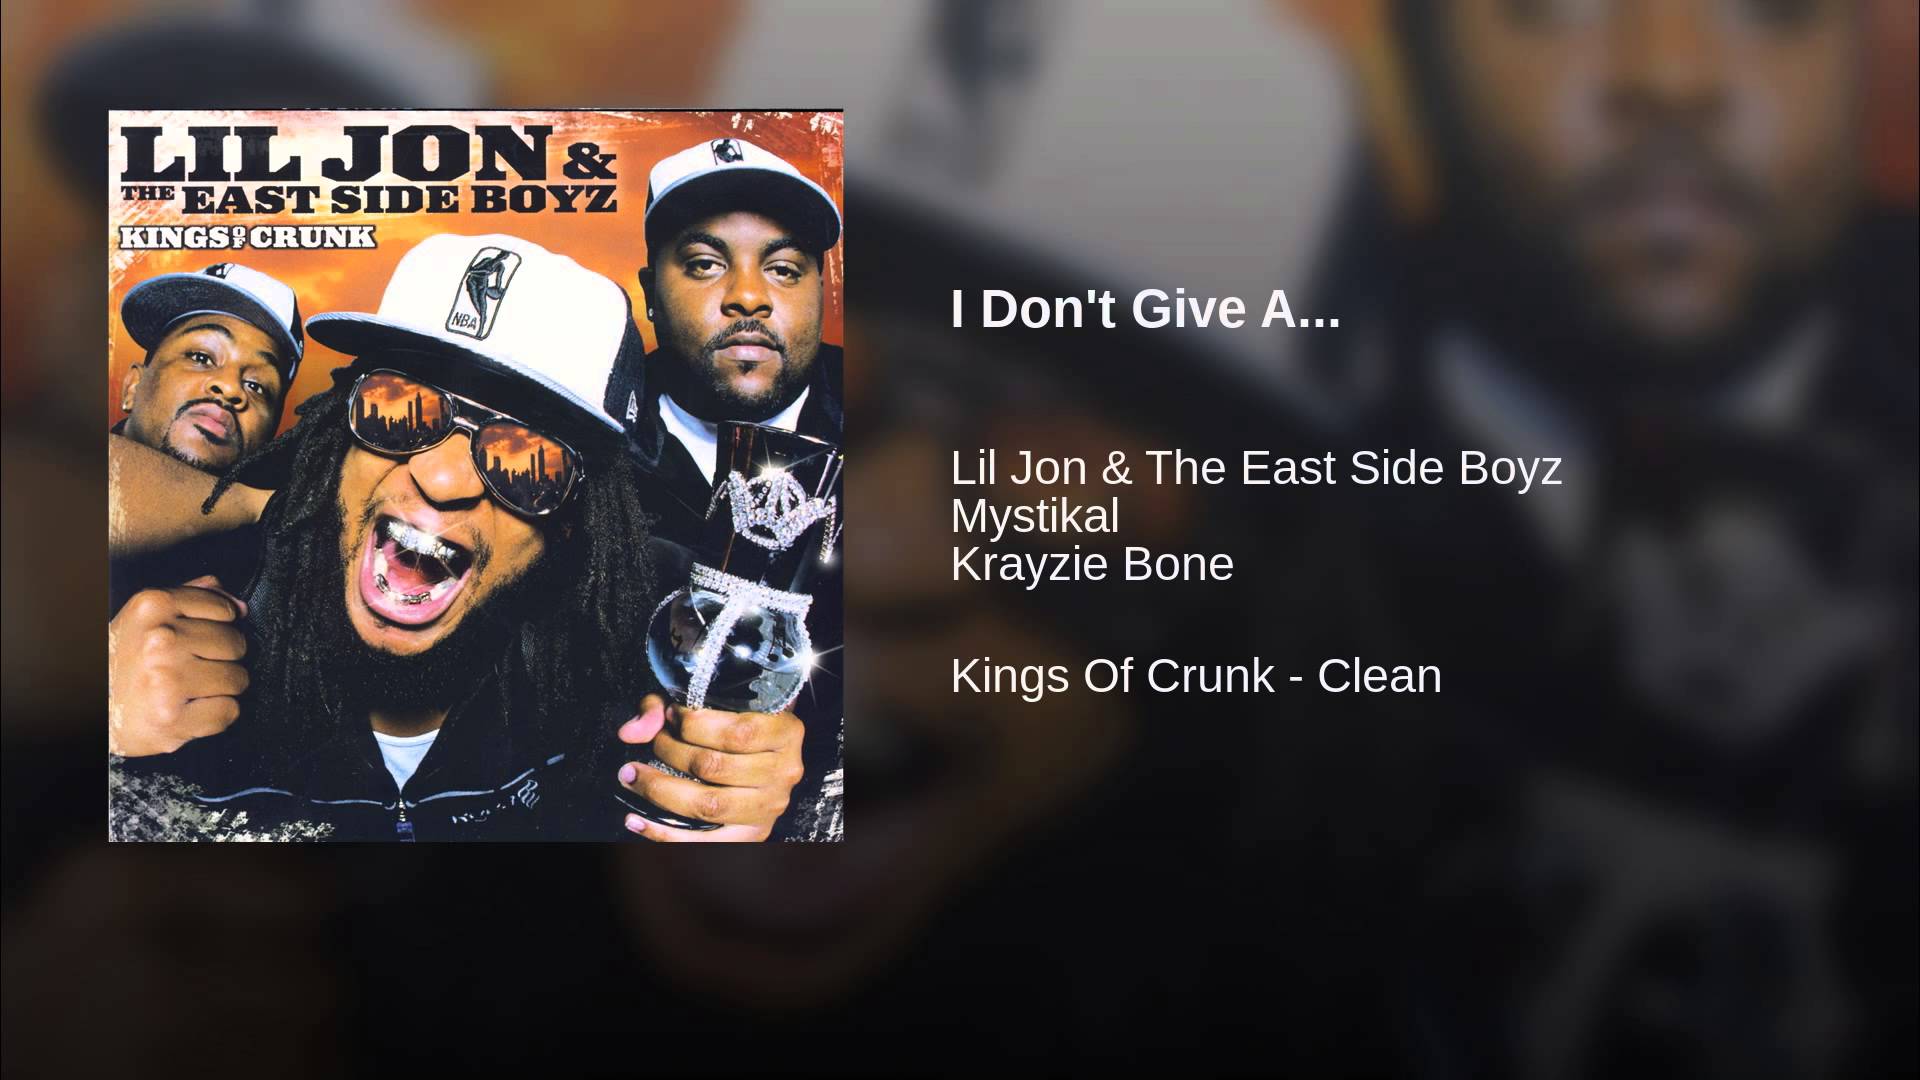 Kings of Crunk Lil Jon & the East Side Boyz. Ying yang Twins, Lil Jon & the East Side Boyz - get Low. Ying yang Twins Lil Jon. Lil jon the eastside boyz get low